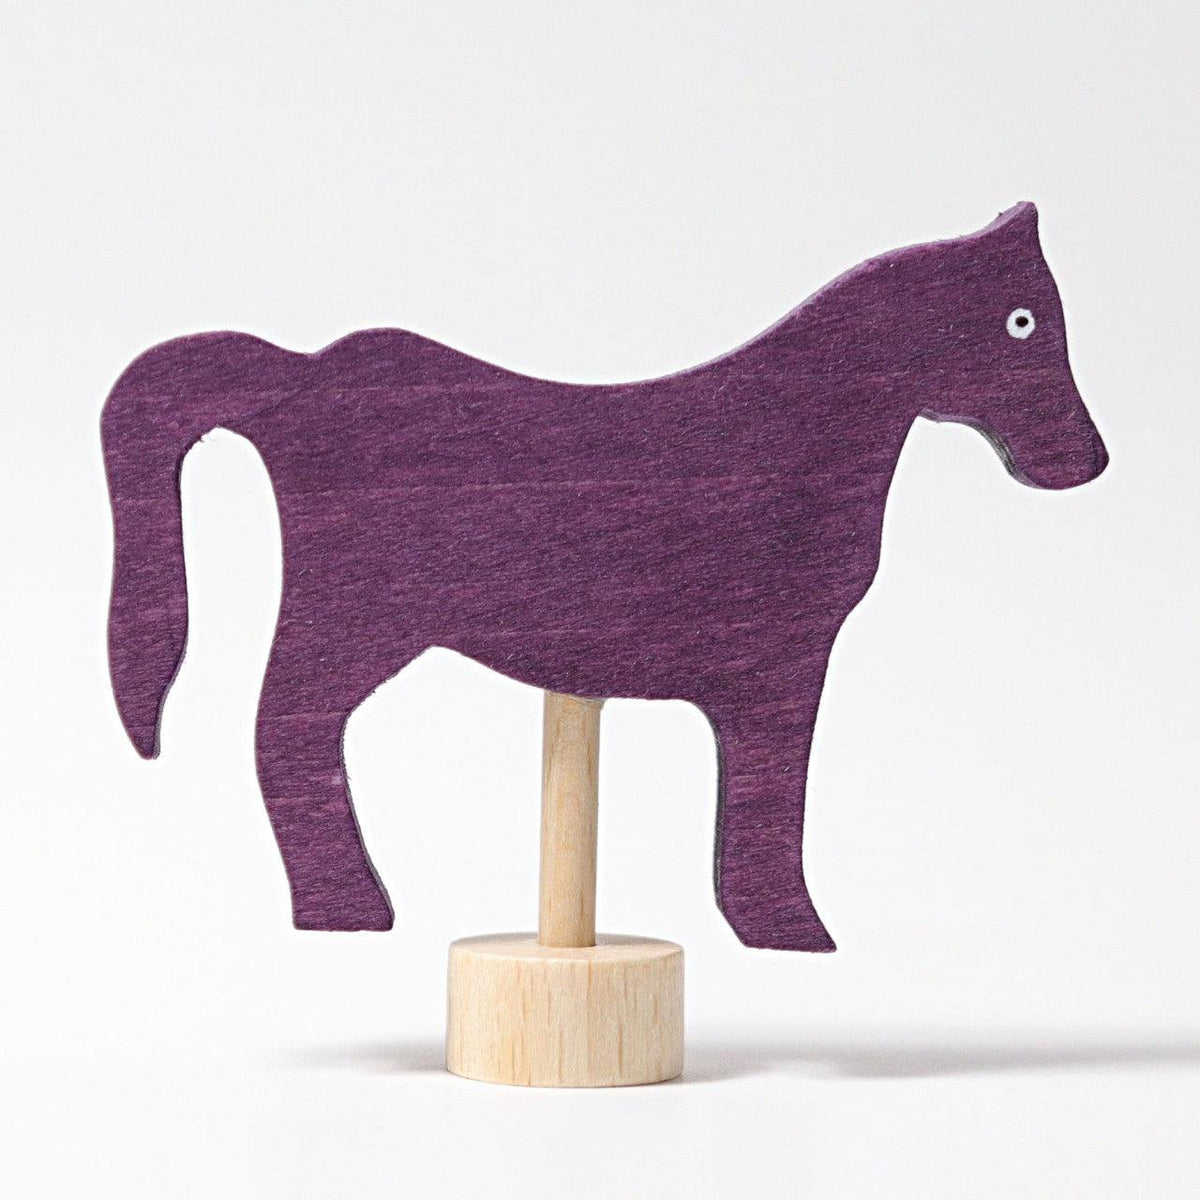 Geburtstagsstecker Pferd violett - www. kunstundspiel .de 03538